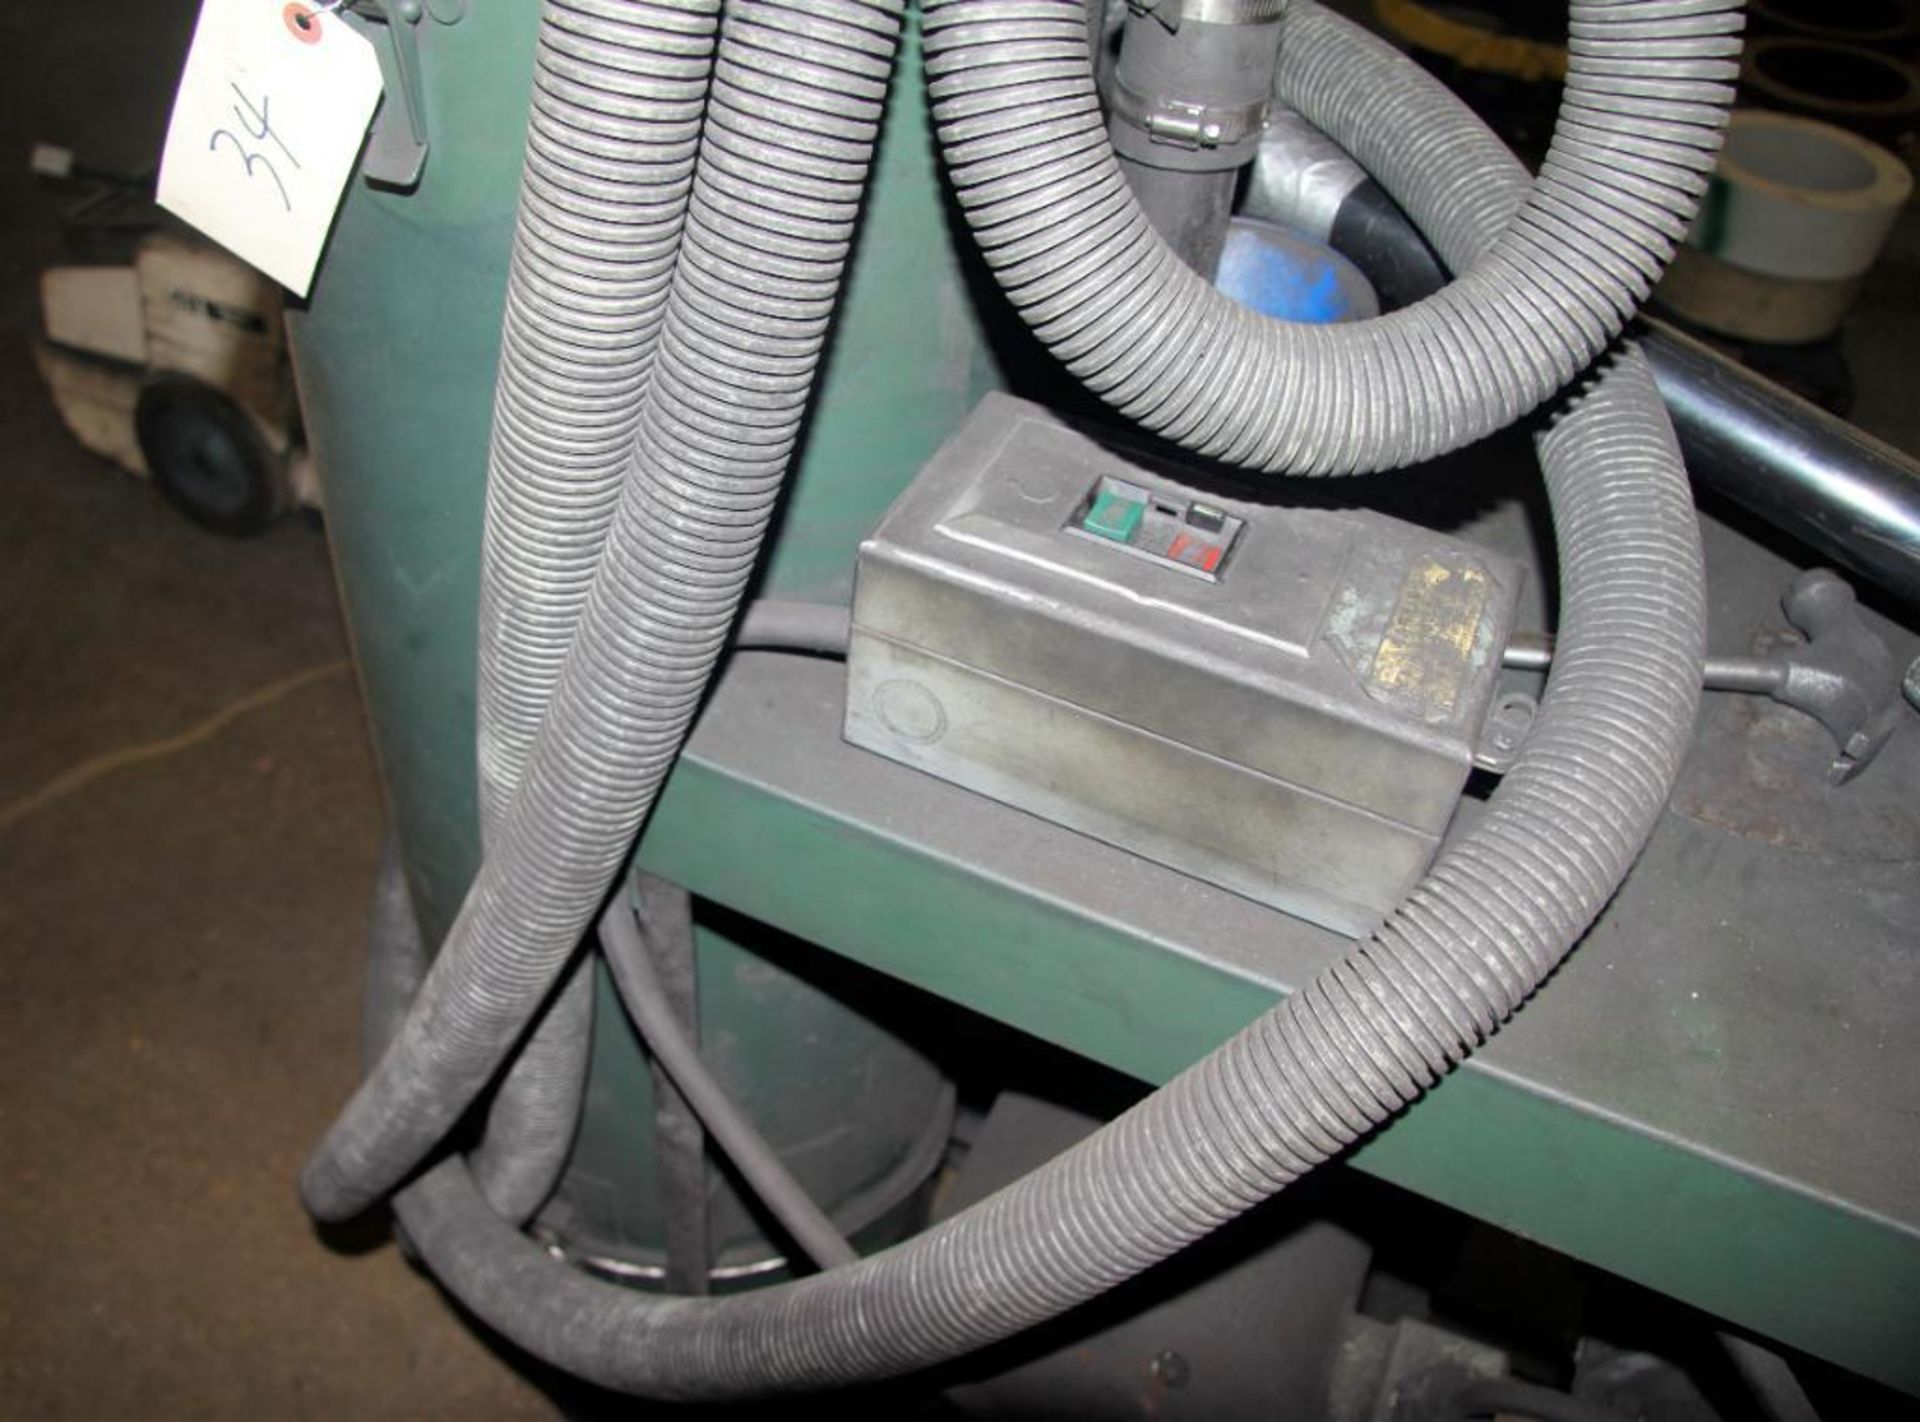 Arcoward Portable Vacuum Unit, Sutorbilt Vacuum Pump - Image 3 of 3